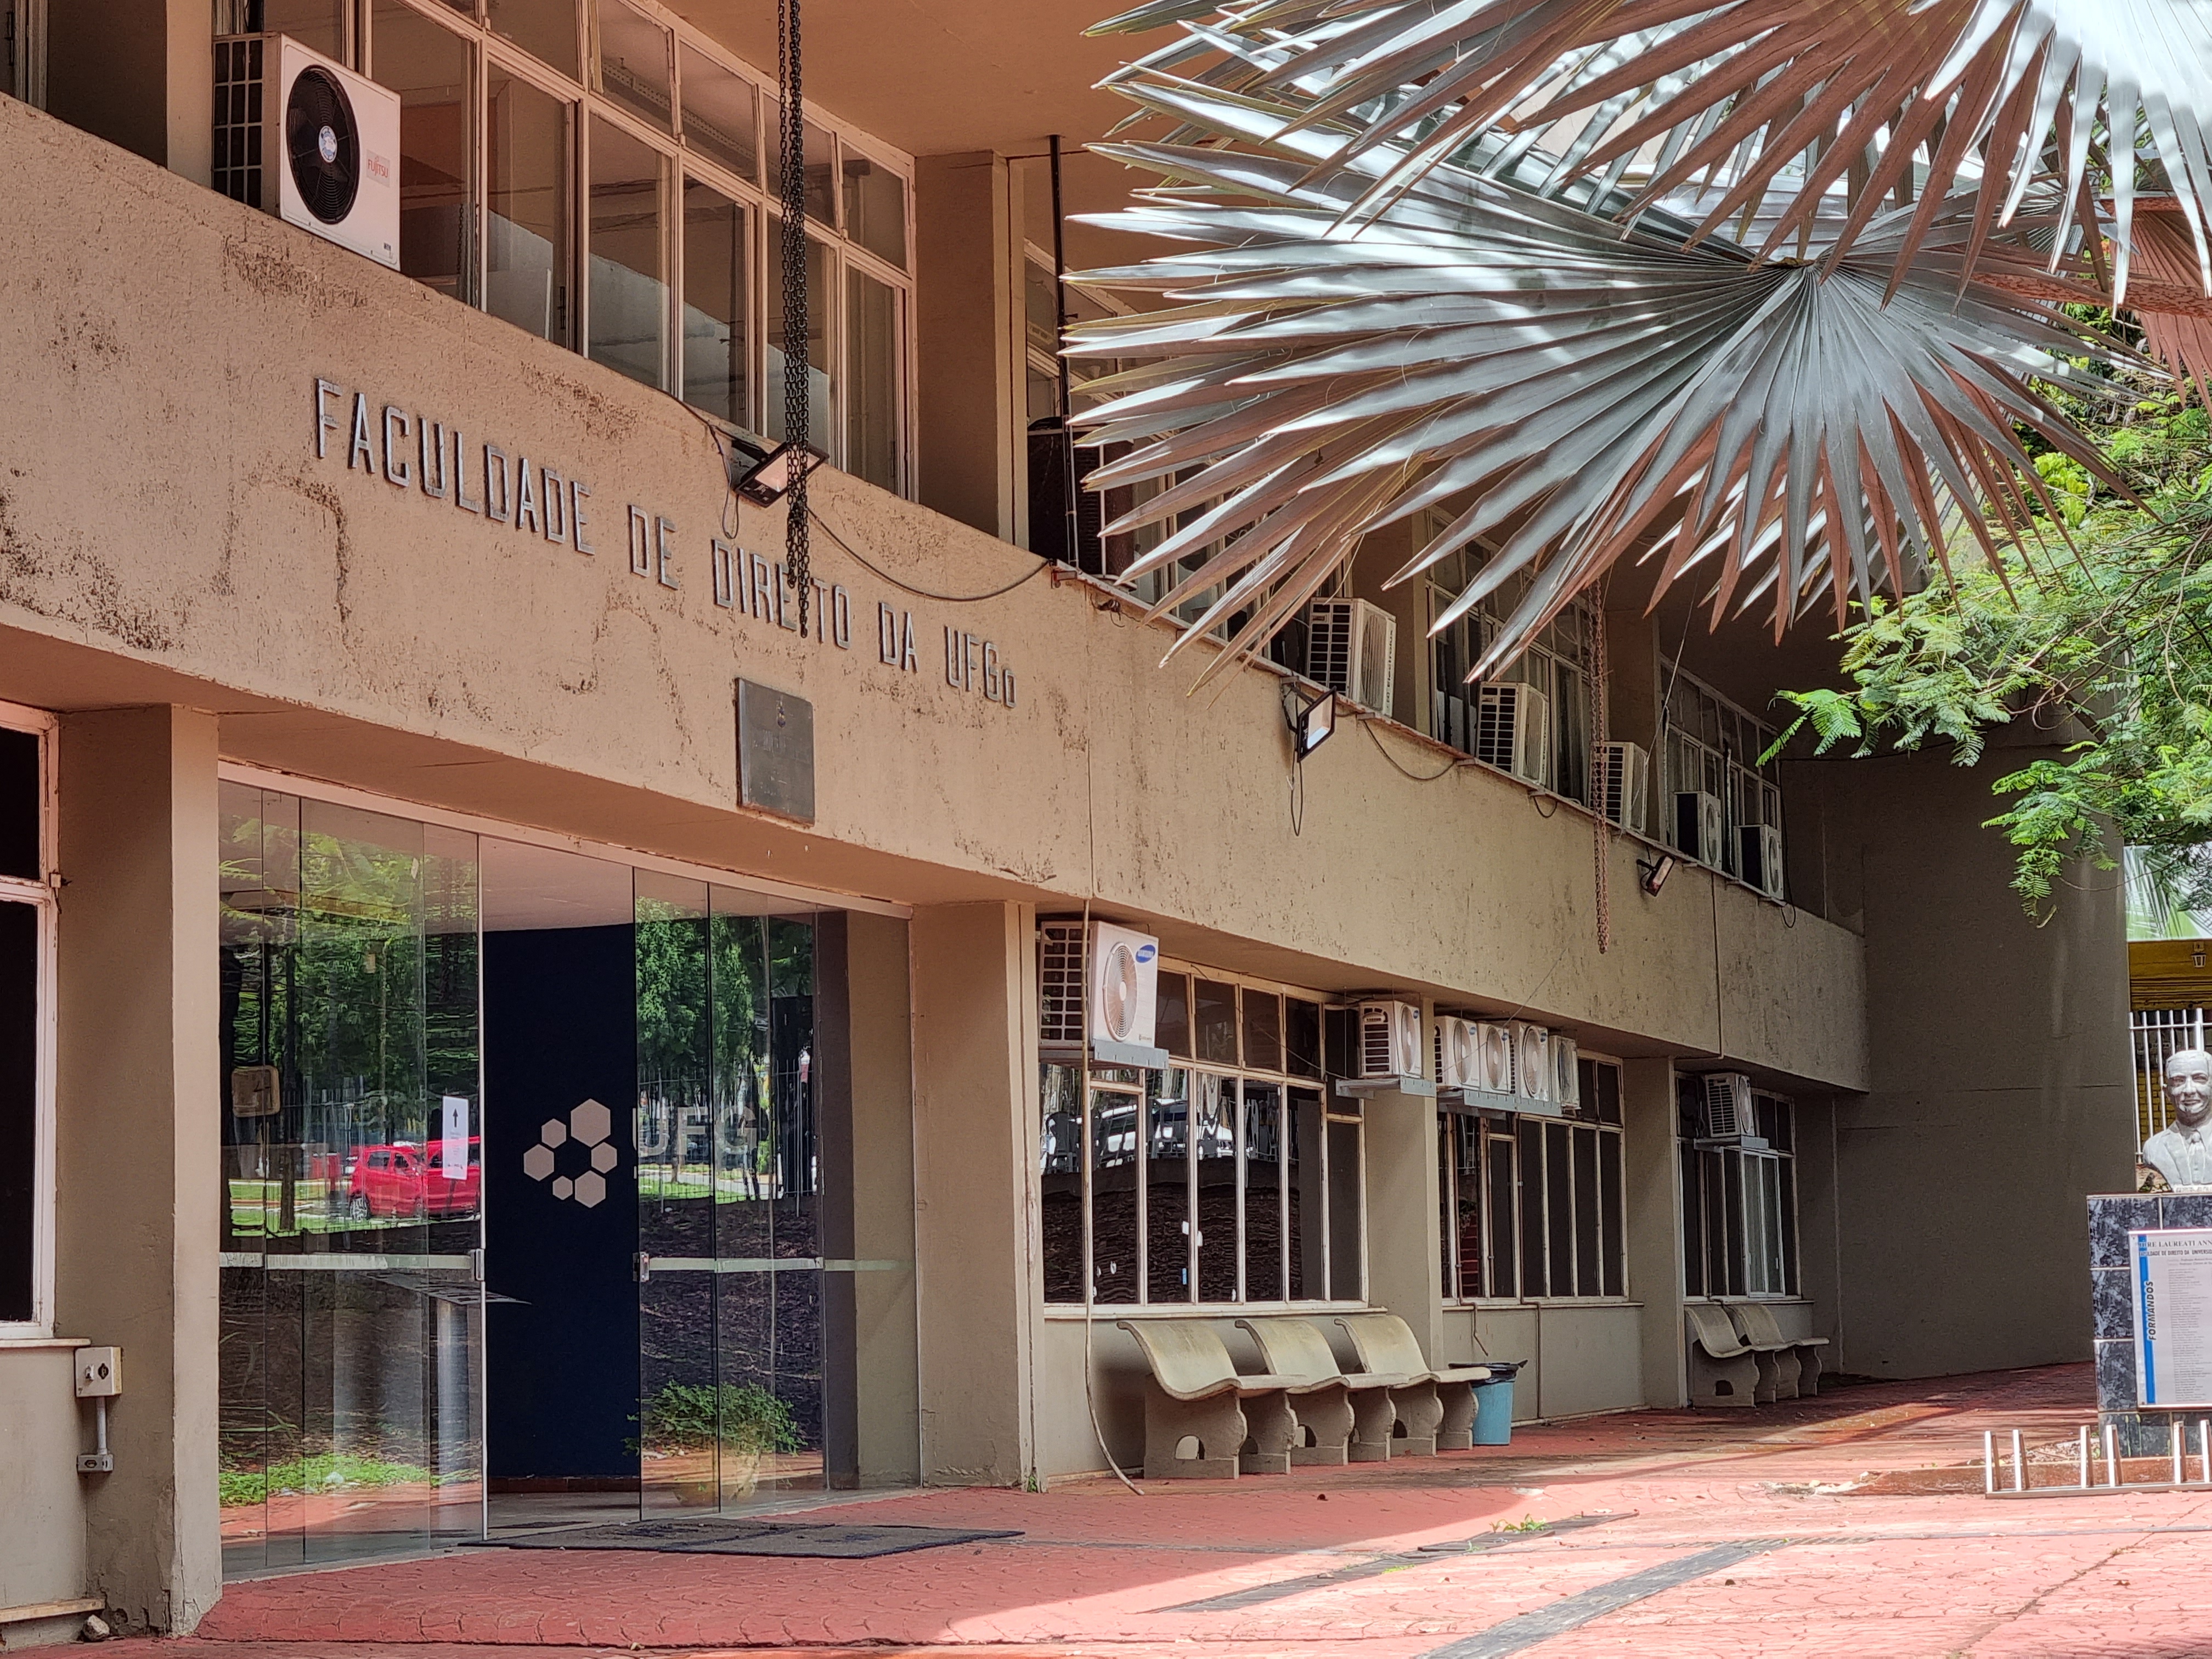 CRT - Faculdade de Direito da UFMG - Conheçam o novo site do Colegiado de  Graduação em Direito